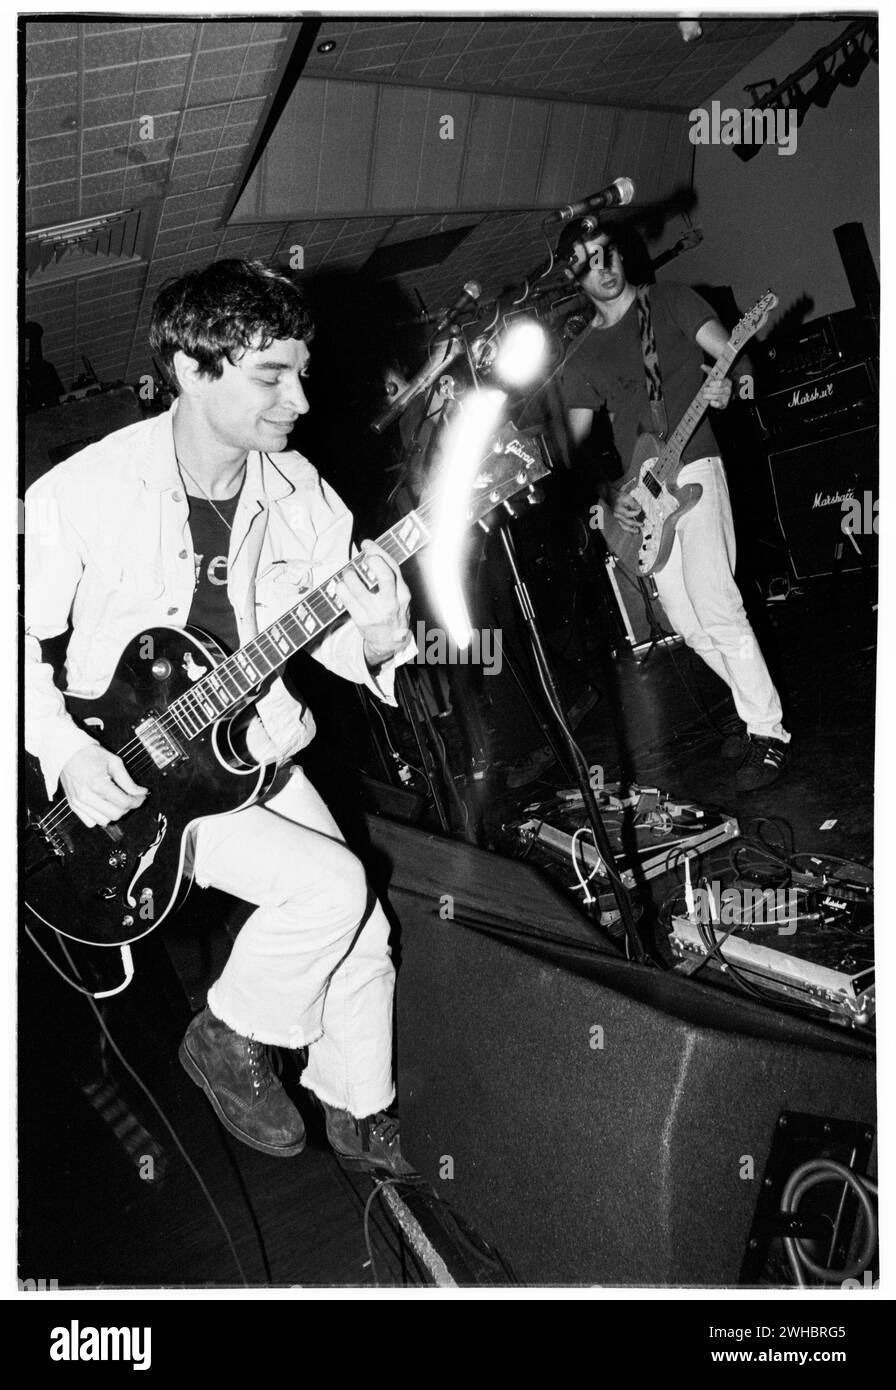 Die skurrile nordische Band DROP, DIE am 7. März 1994 an der Glamorgan University in Treforest, Wales, Großbritannien, spielte. Foto: Rob Watkins. Stockfoto